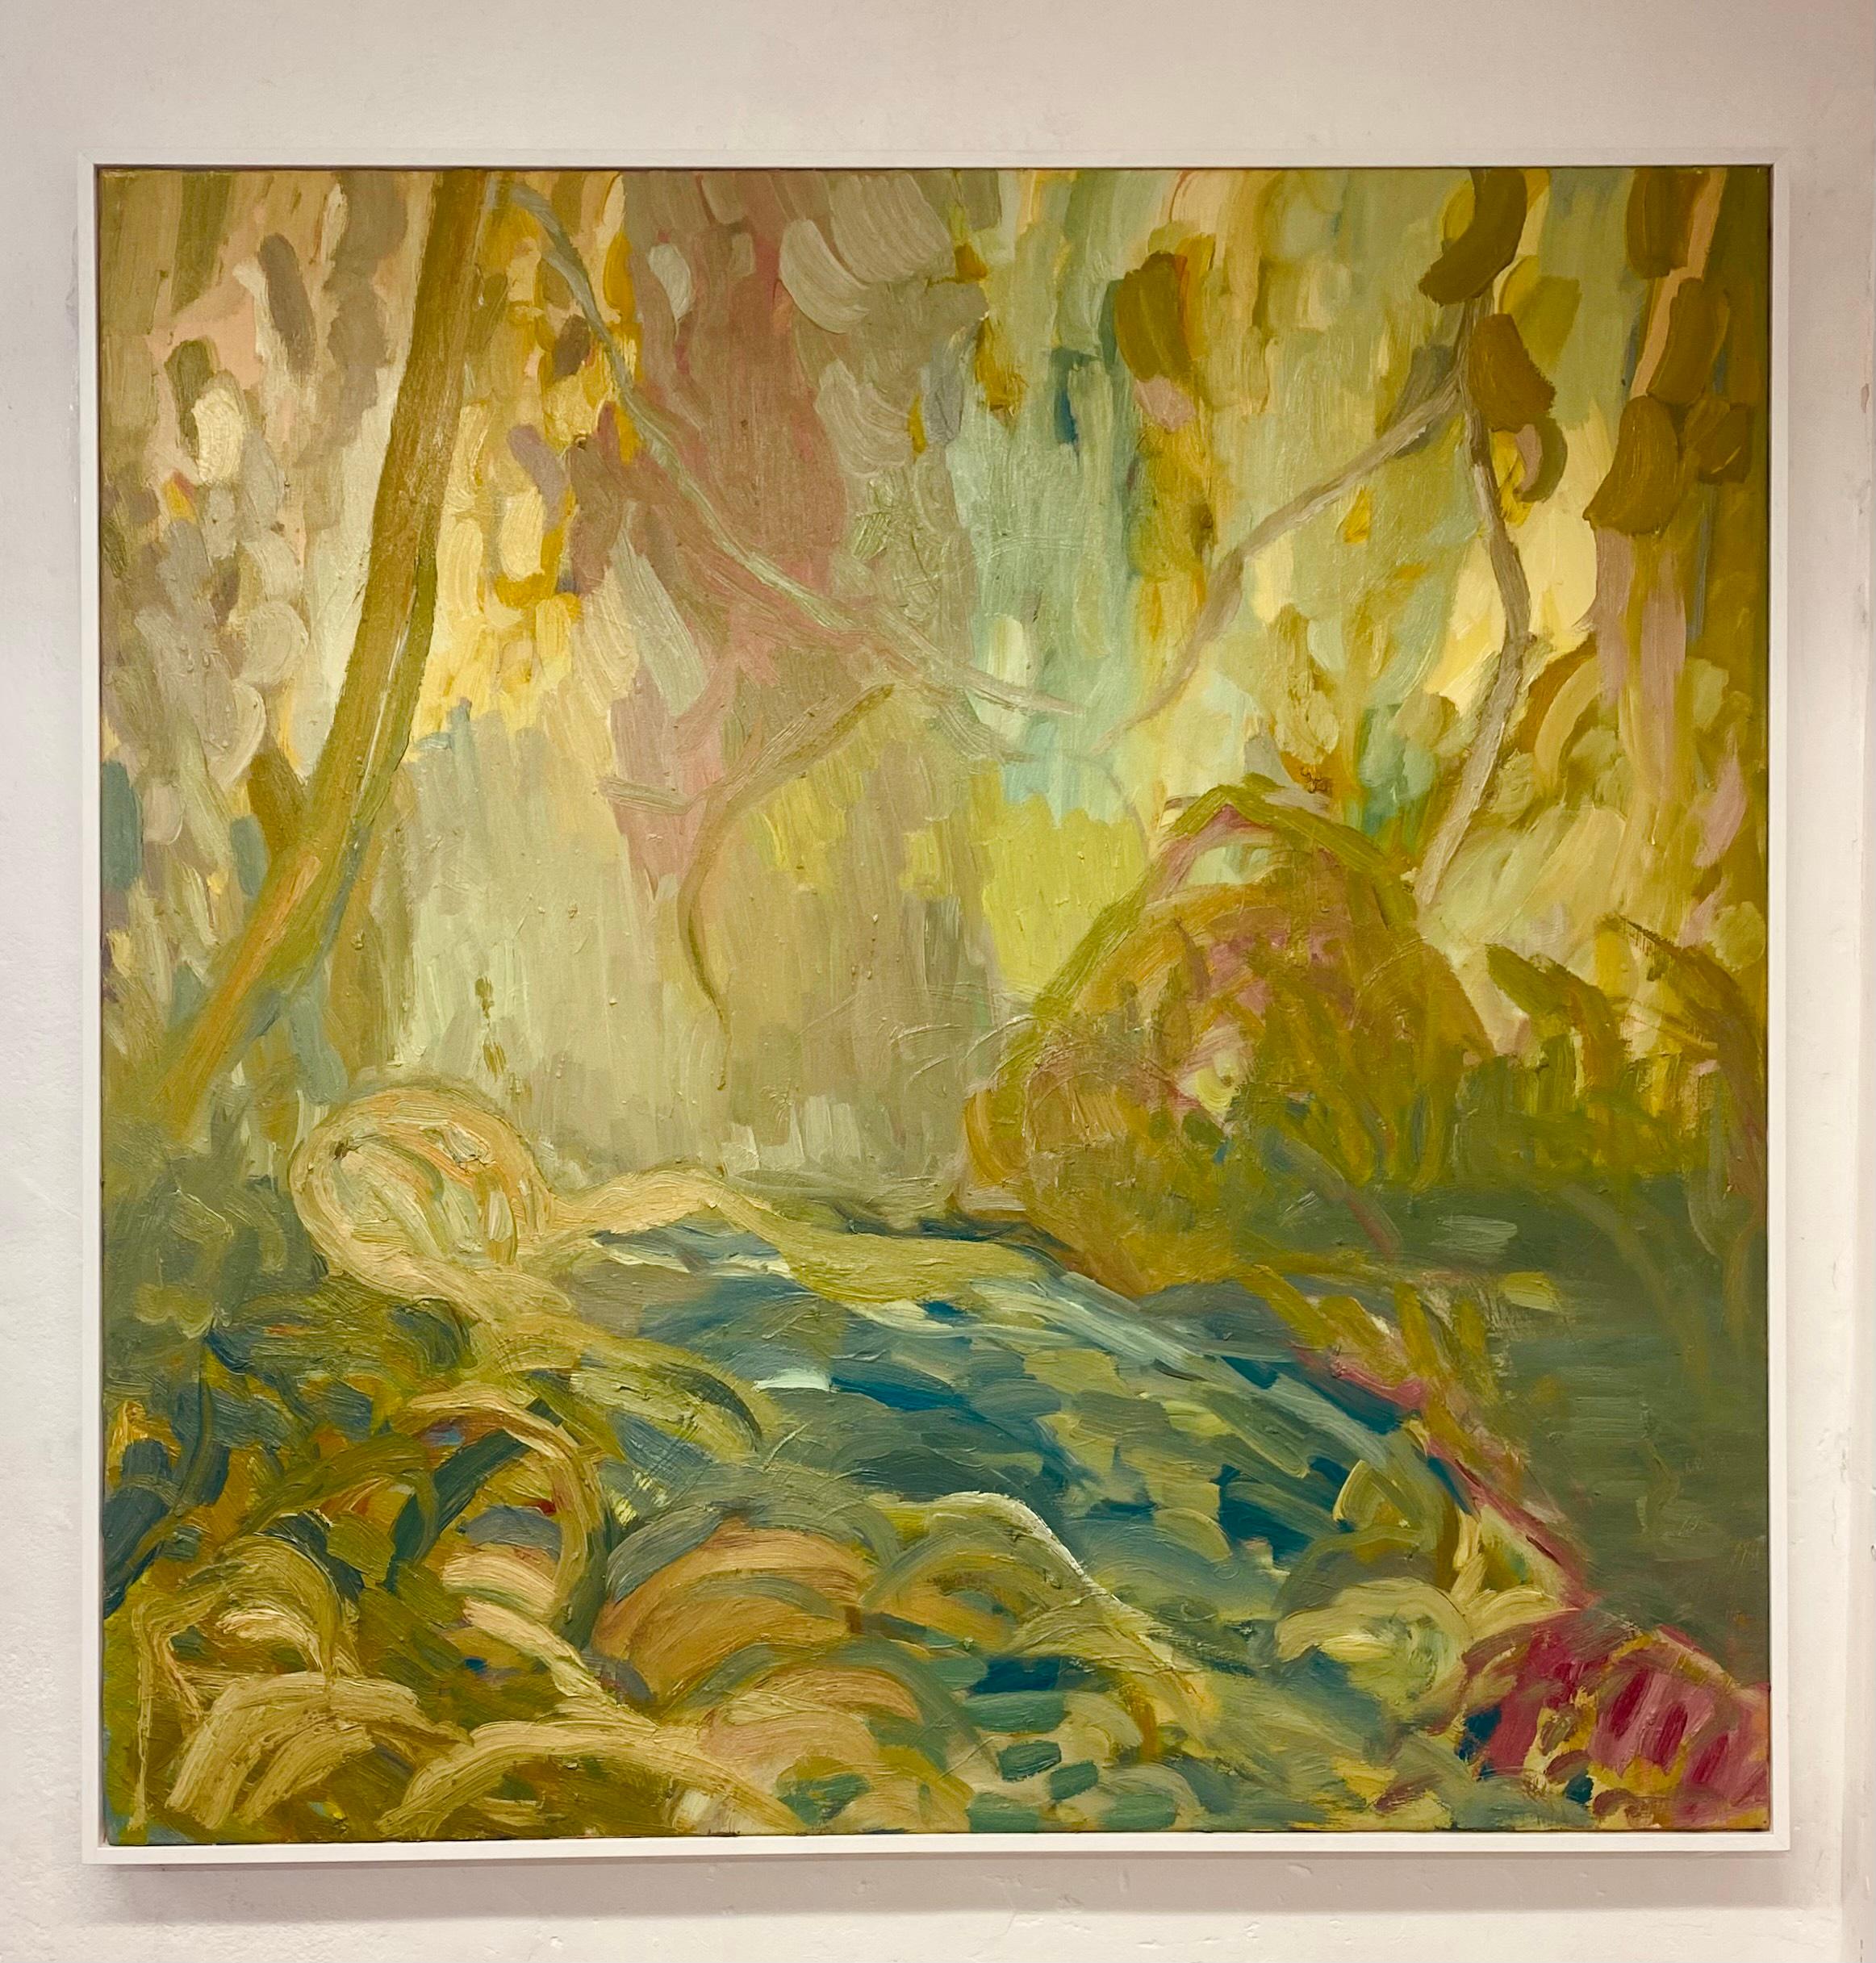 Der Zauber ist von Zauberhand gemacht. Zeitgenössisches impressionistisches Ölgemälde – Painting von FRANCESCA OWEN 